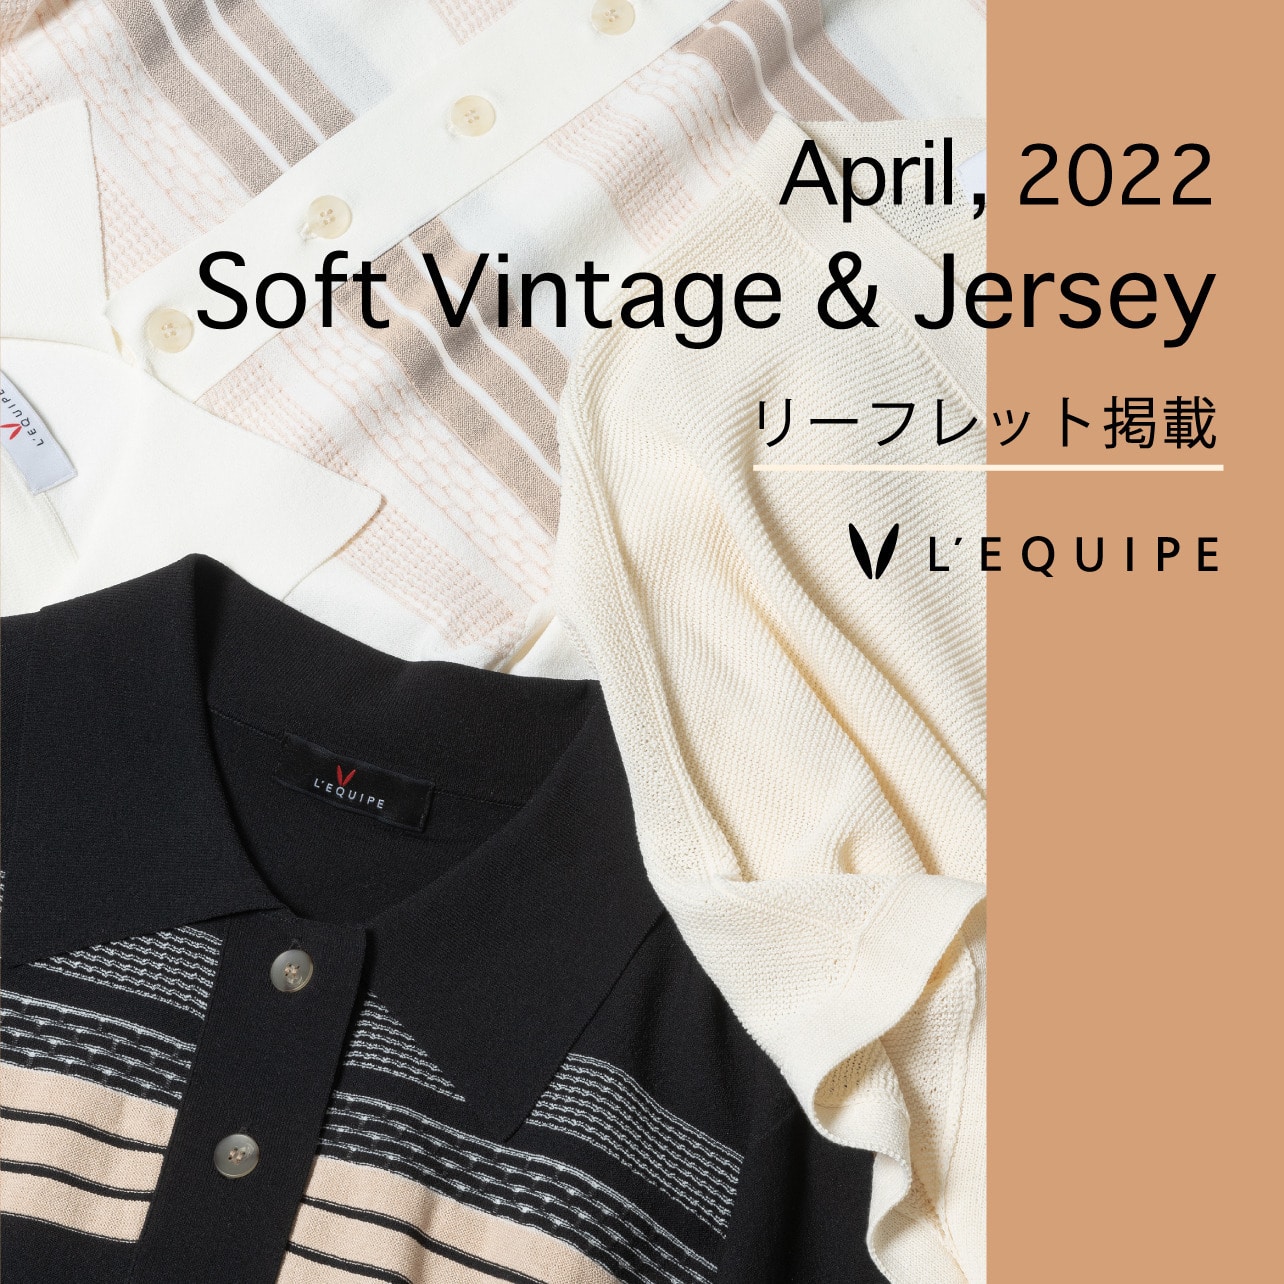 Soft Vintage & Jersey